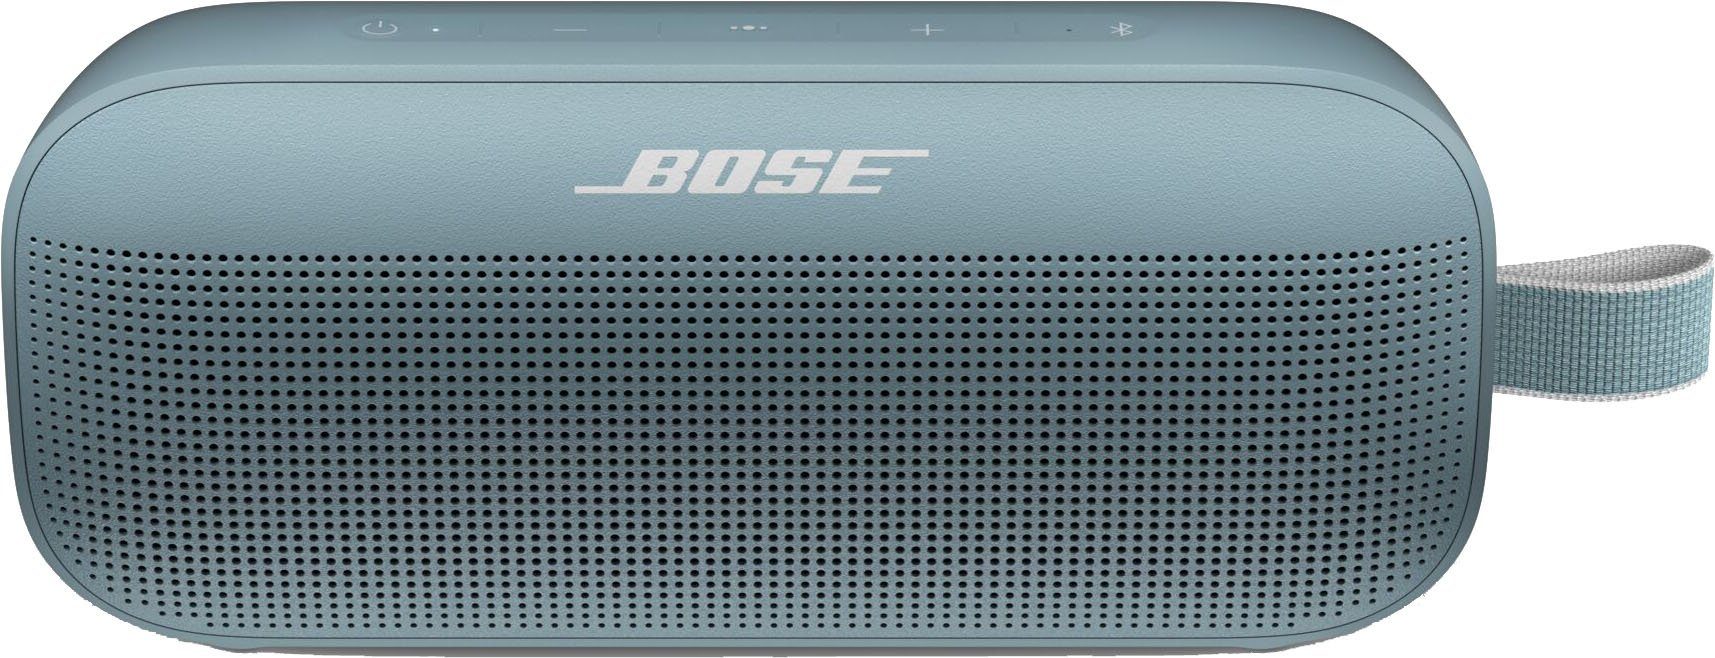 Von offiziellen Händlern bezogen Bose SoundLink Flex Stereo Lautsprecher blau (Bluetooth)